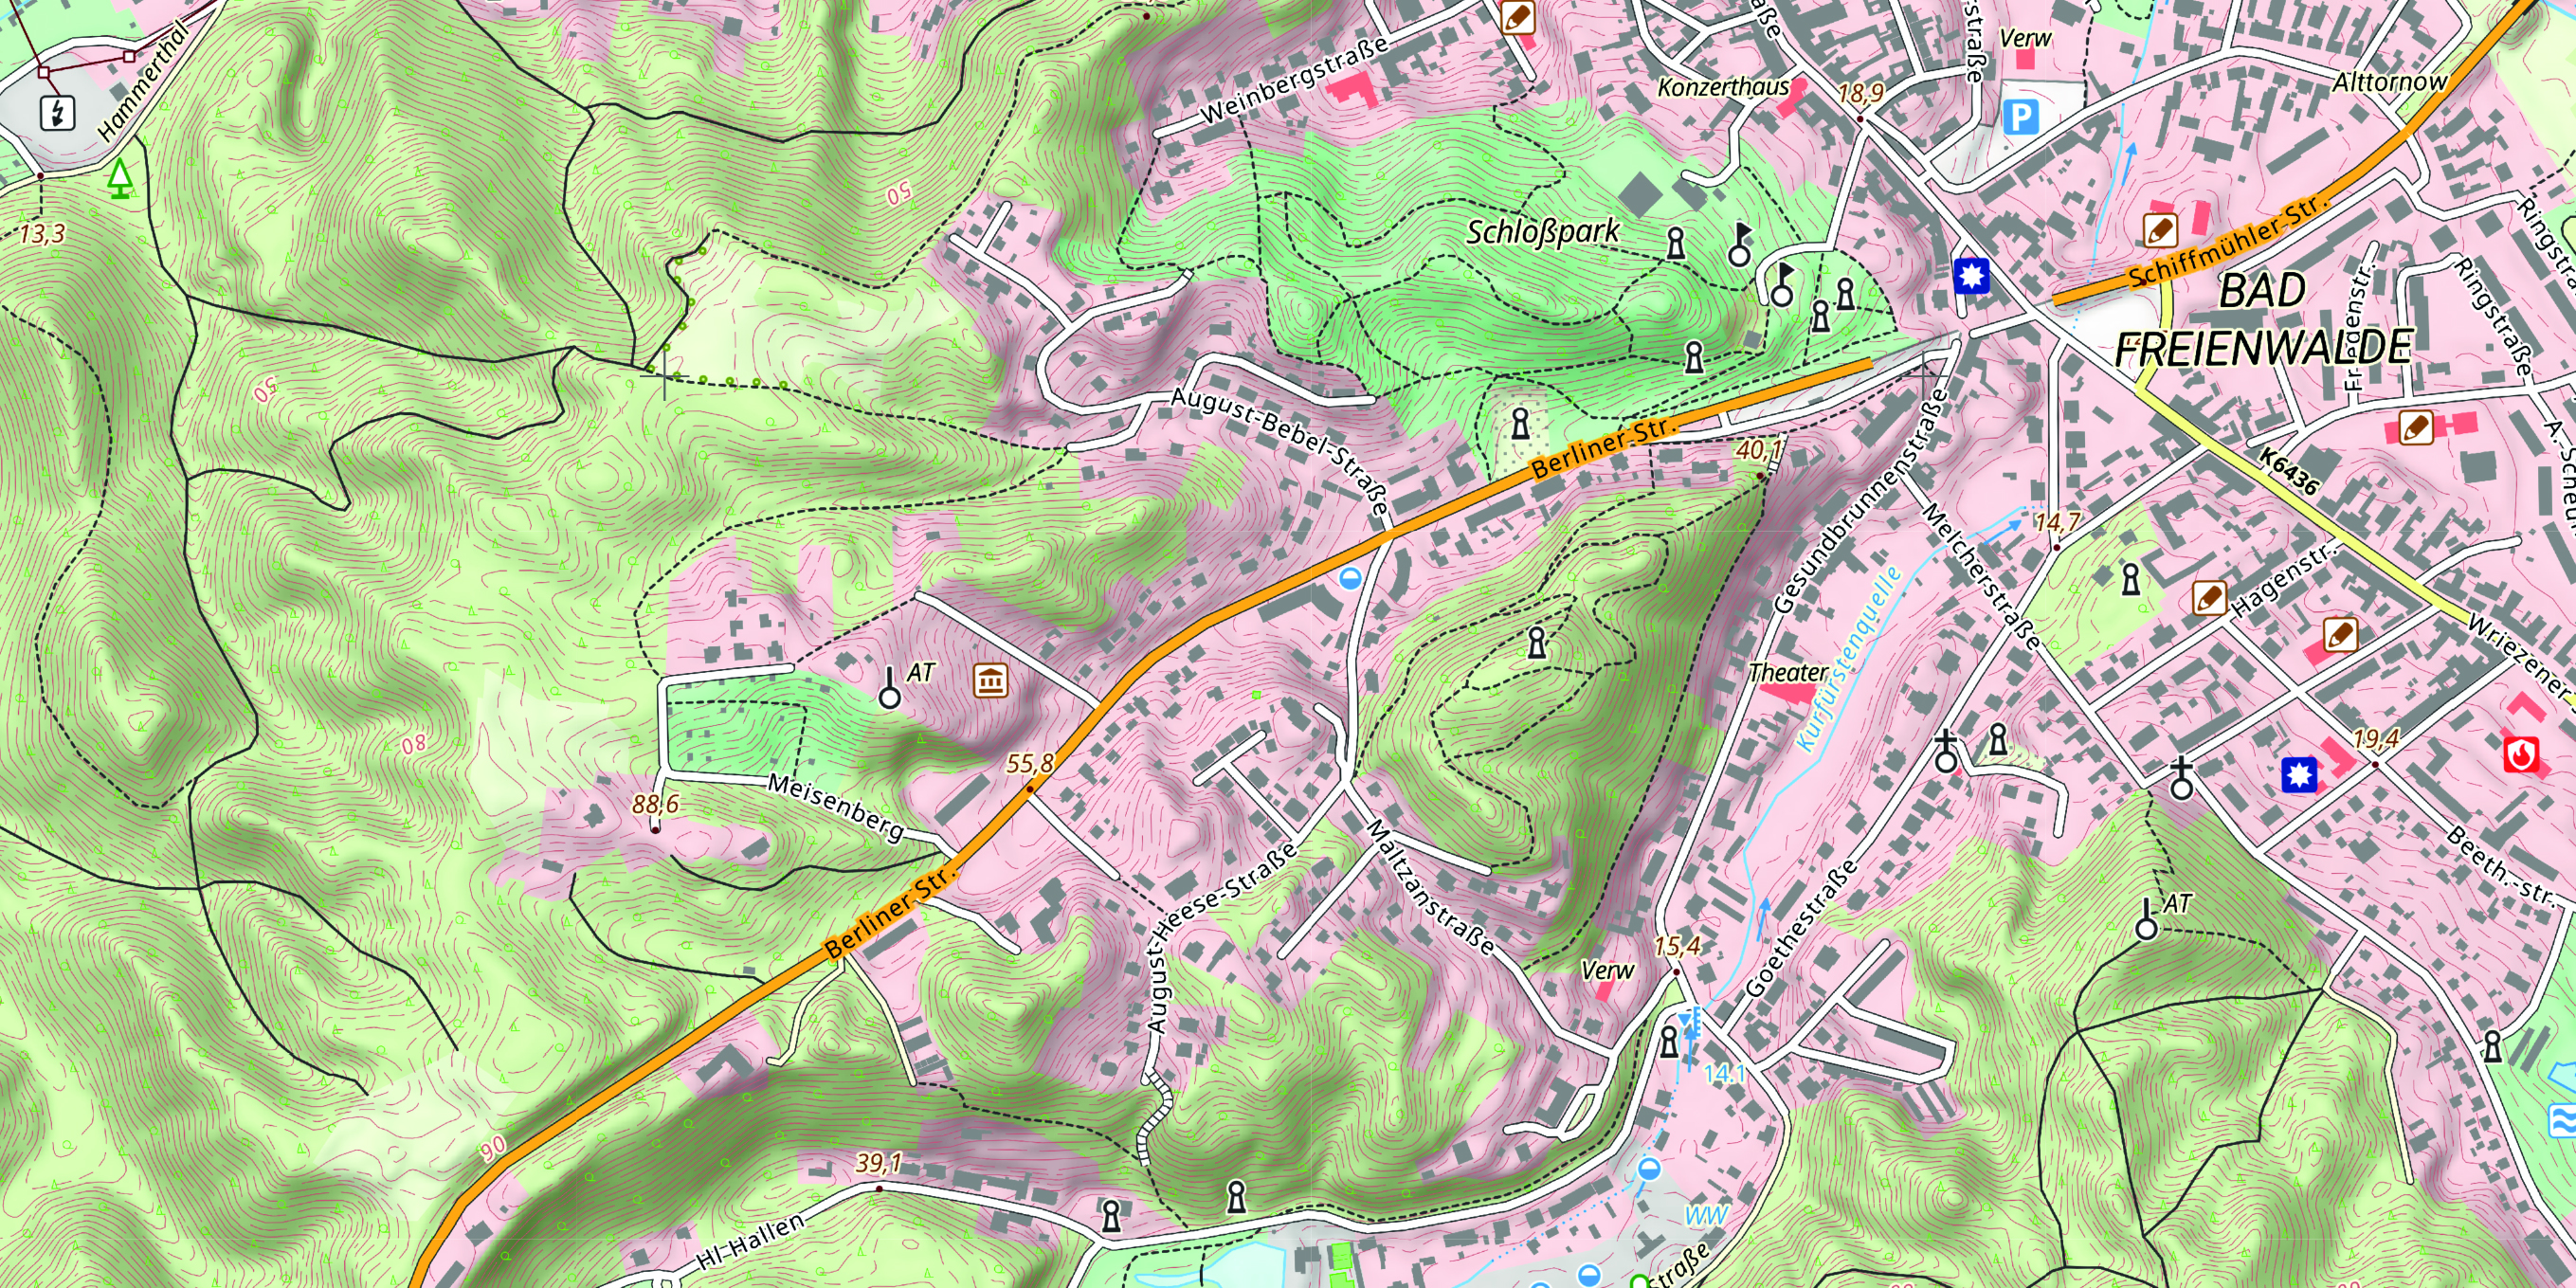 öffnet Abbildung und zeigt die neue Topgraphischen Karte im Maßstab 1:10.000 am Beispiel von Bad Freienwalde